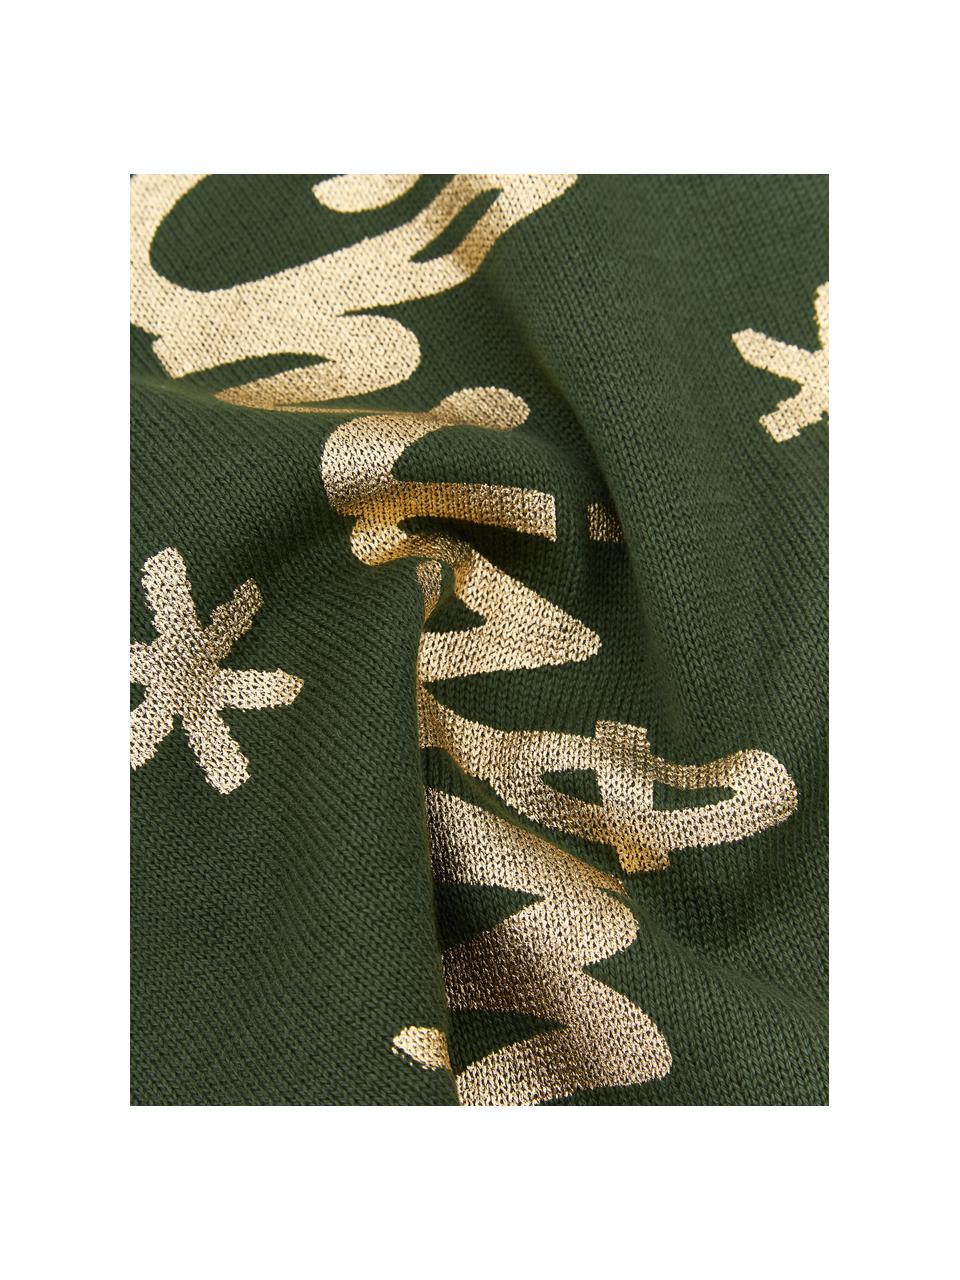 Federa arredo a maglia color verde/dorato con scritta Christmas, 100% cotone, Verde, dorato, Larg. 40 x Lung. 40 cm